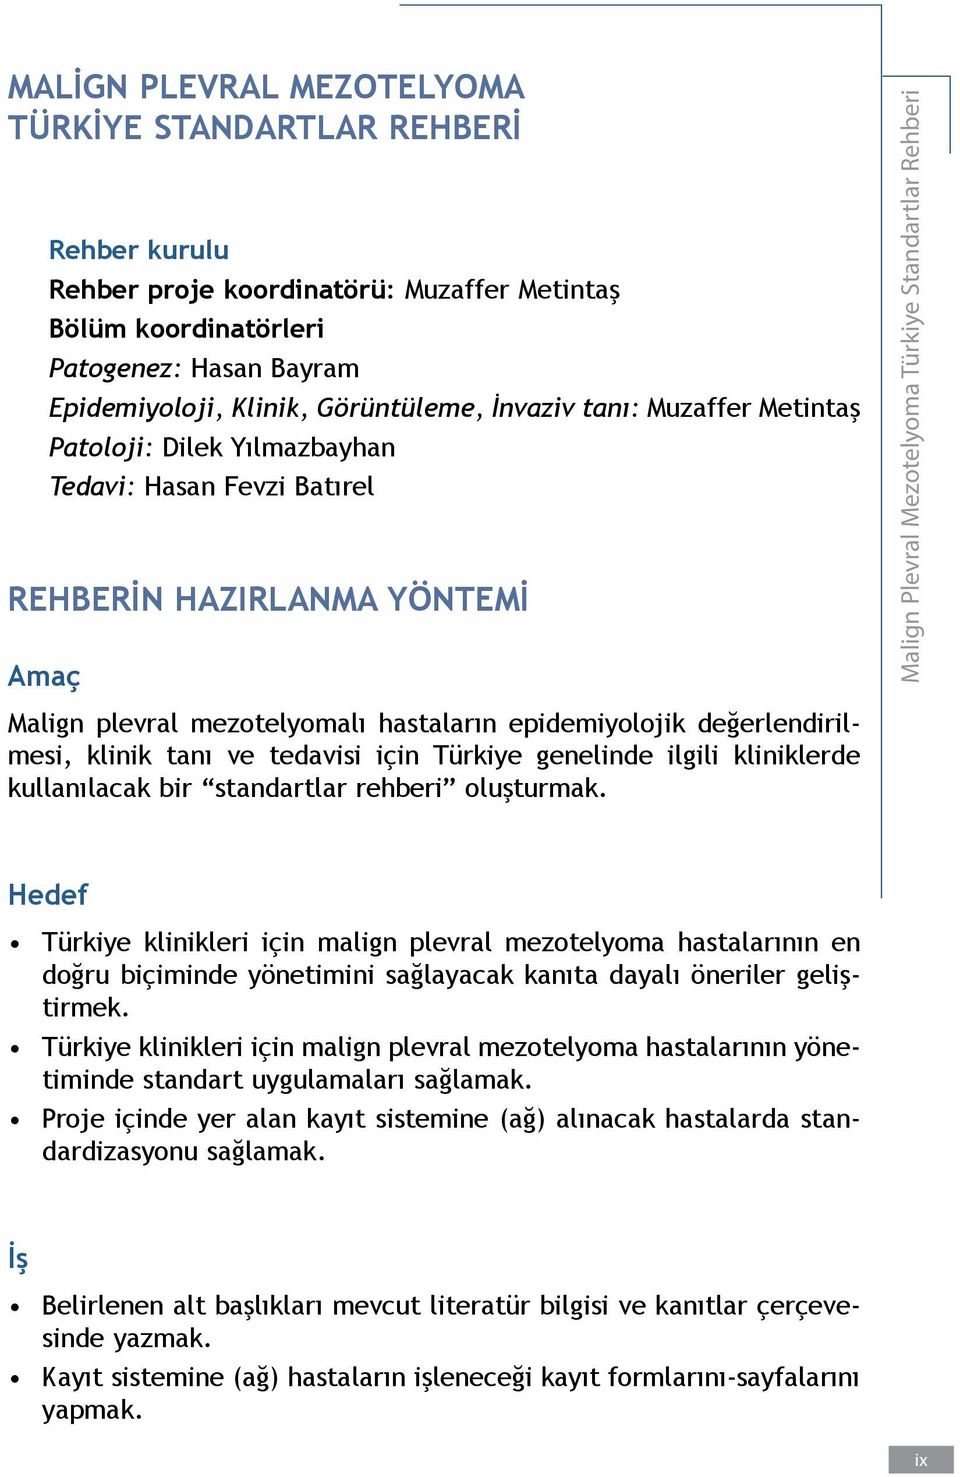 klinik tanı ve tedavisi için Türkiye genelinde ilgili kliniklerde kullanılacak bir standartlar rehberi oluşturmak.